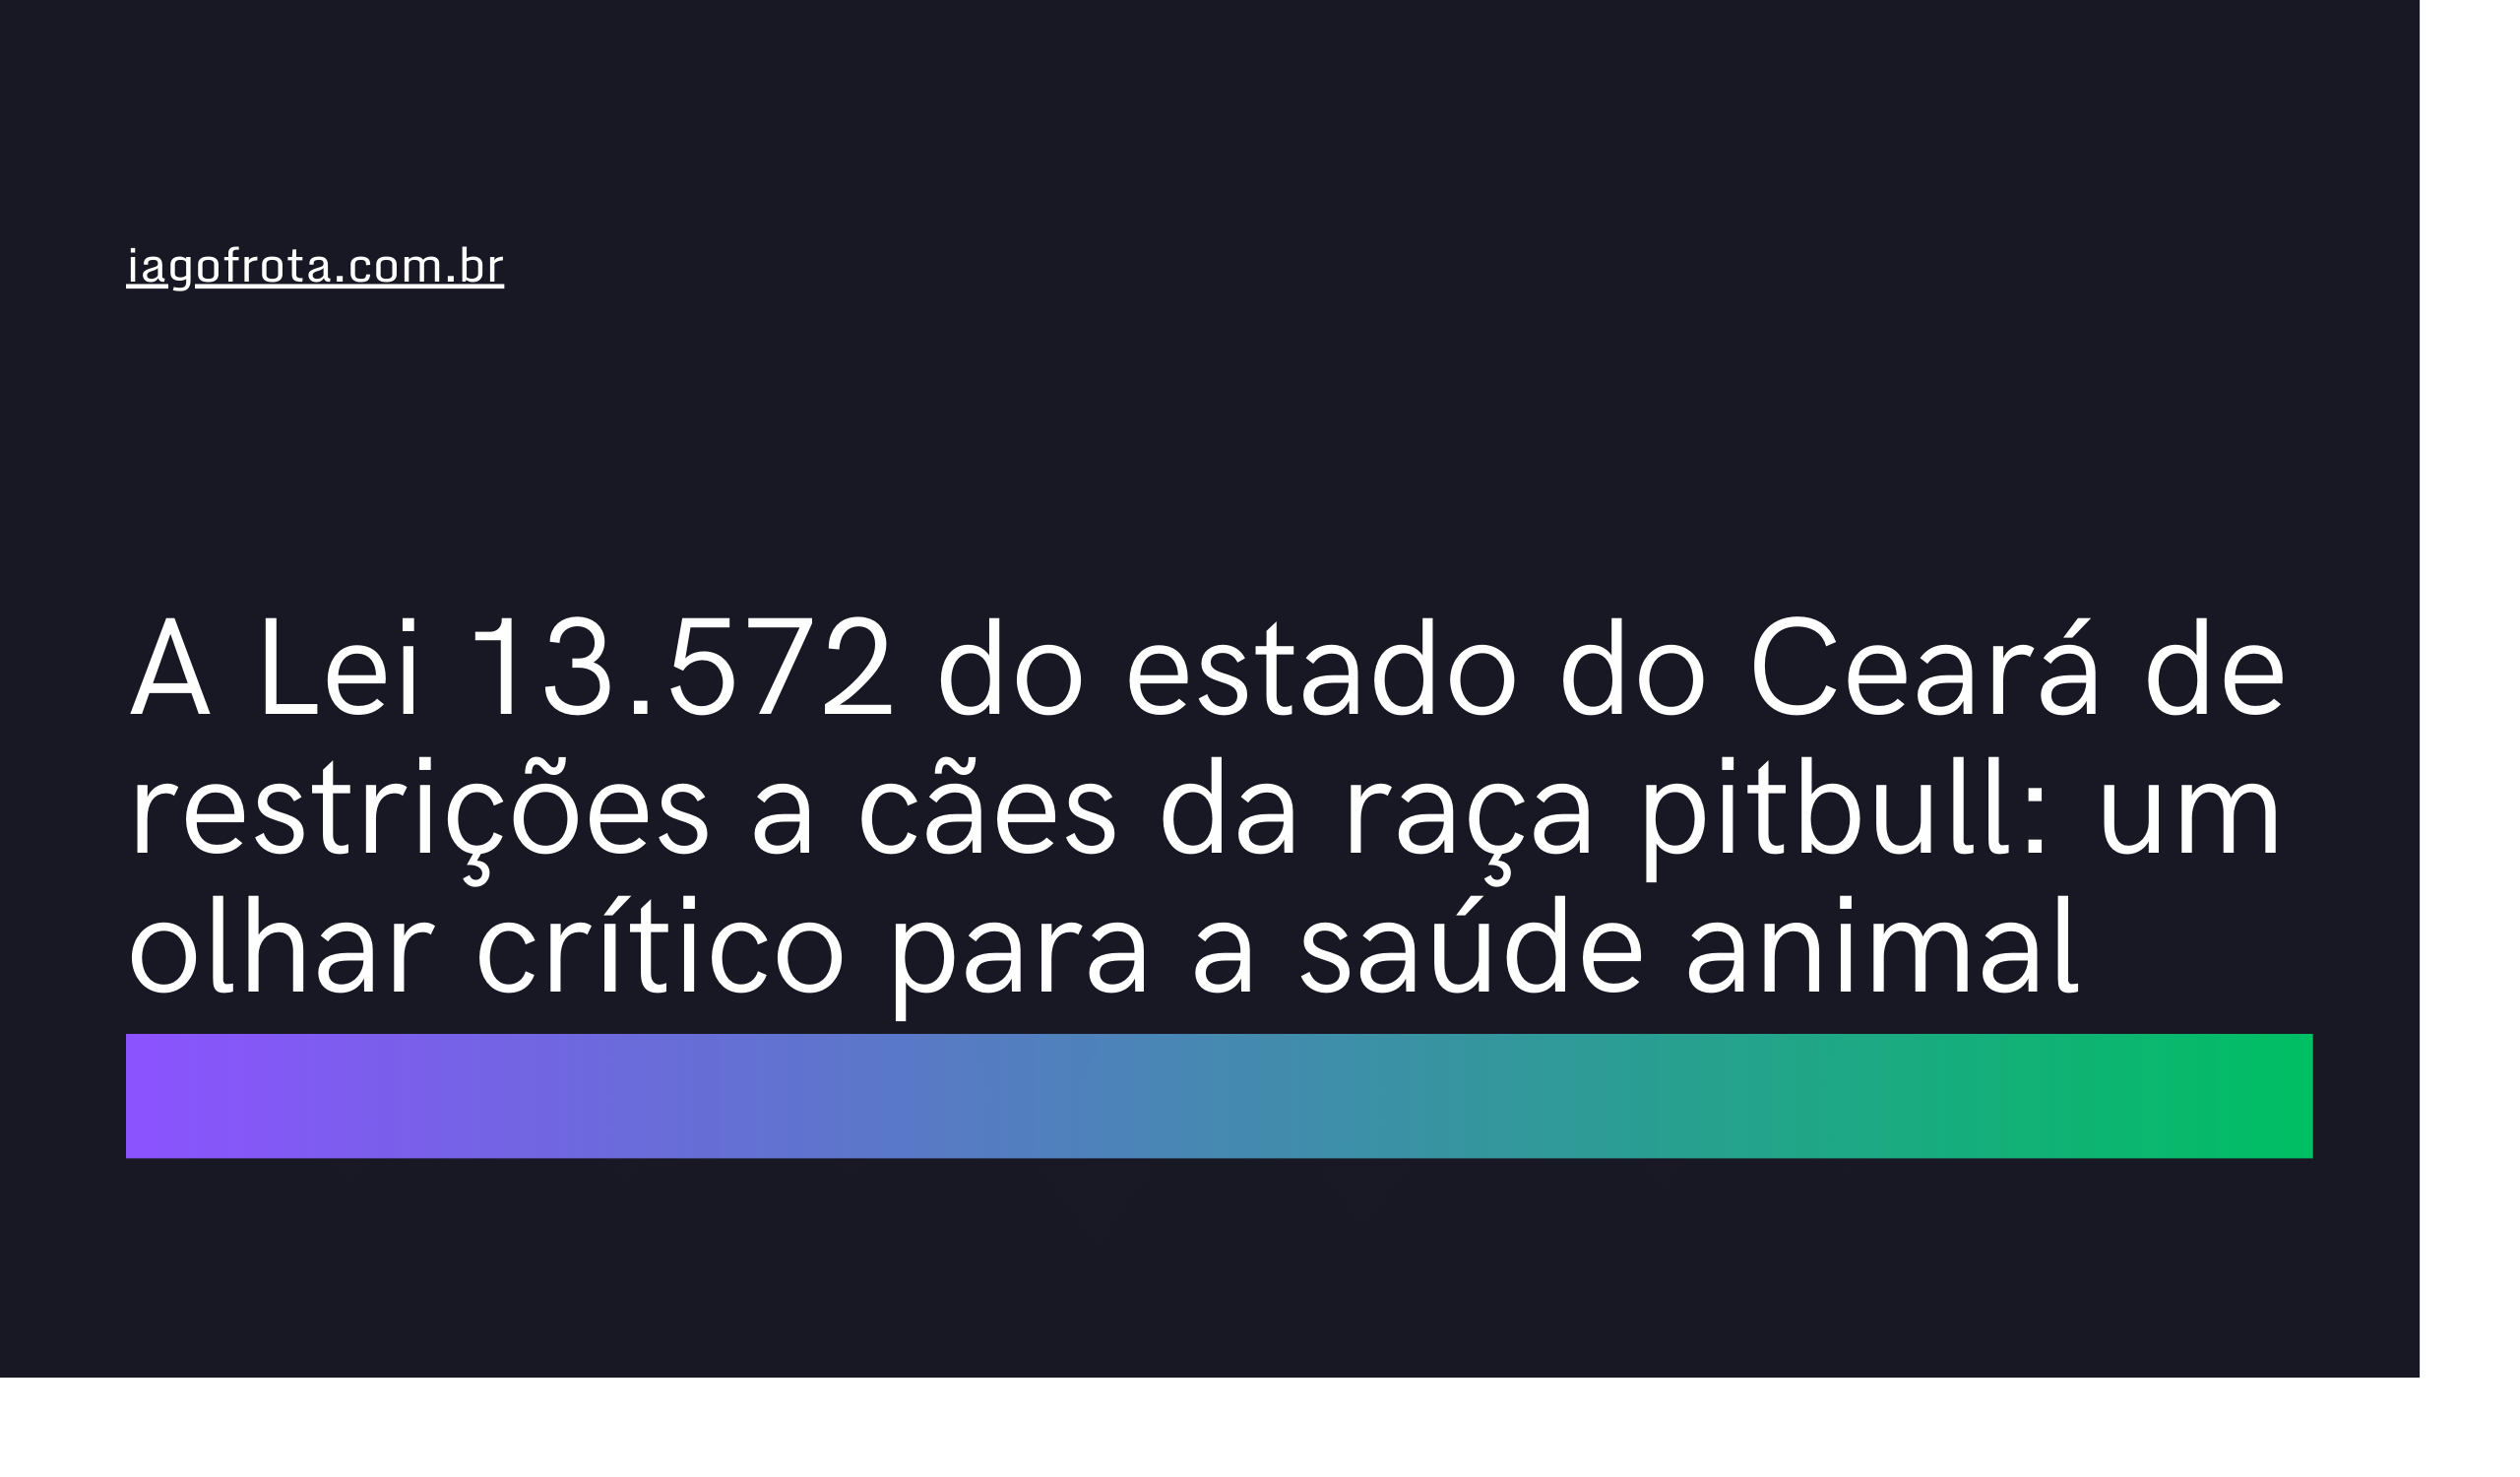 A Lei 13.572 do estado do Ceará de restrições a cães da raça pitbull: um olhar crítico para a saúde animal